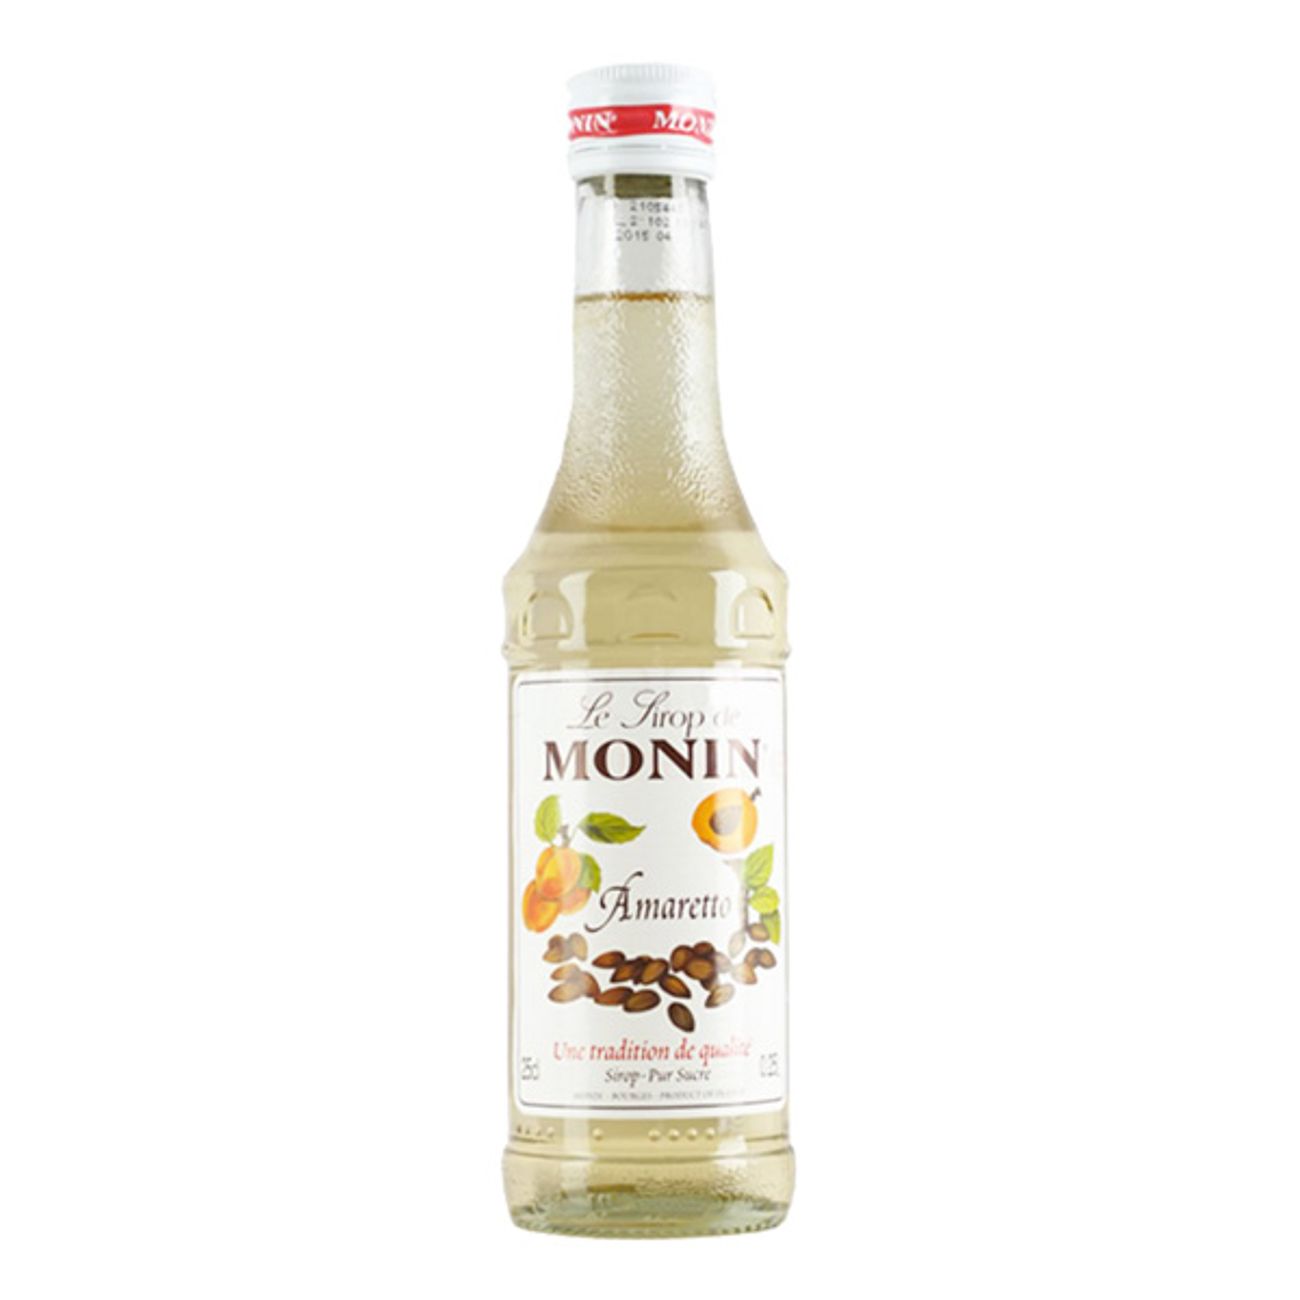 monin-amaretto-drinkmix-1